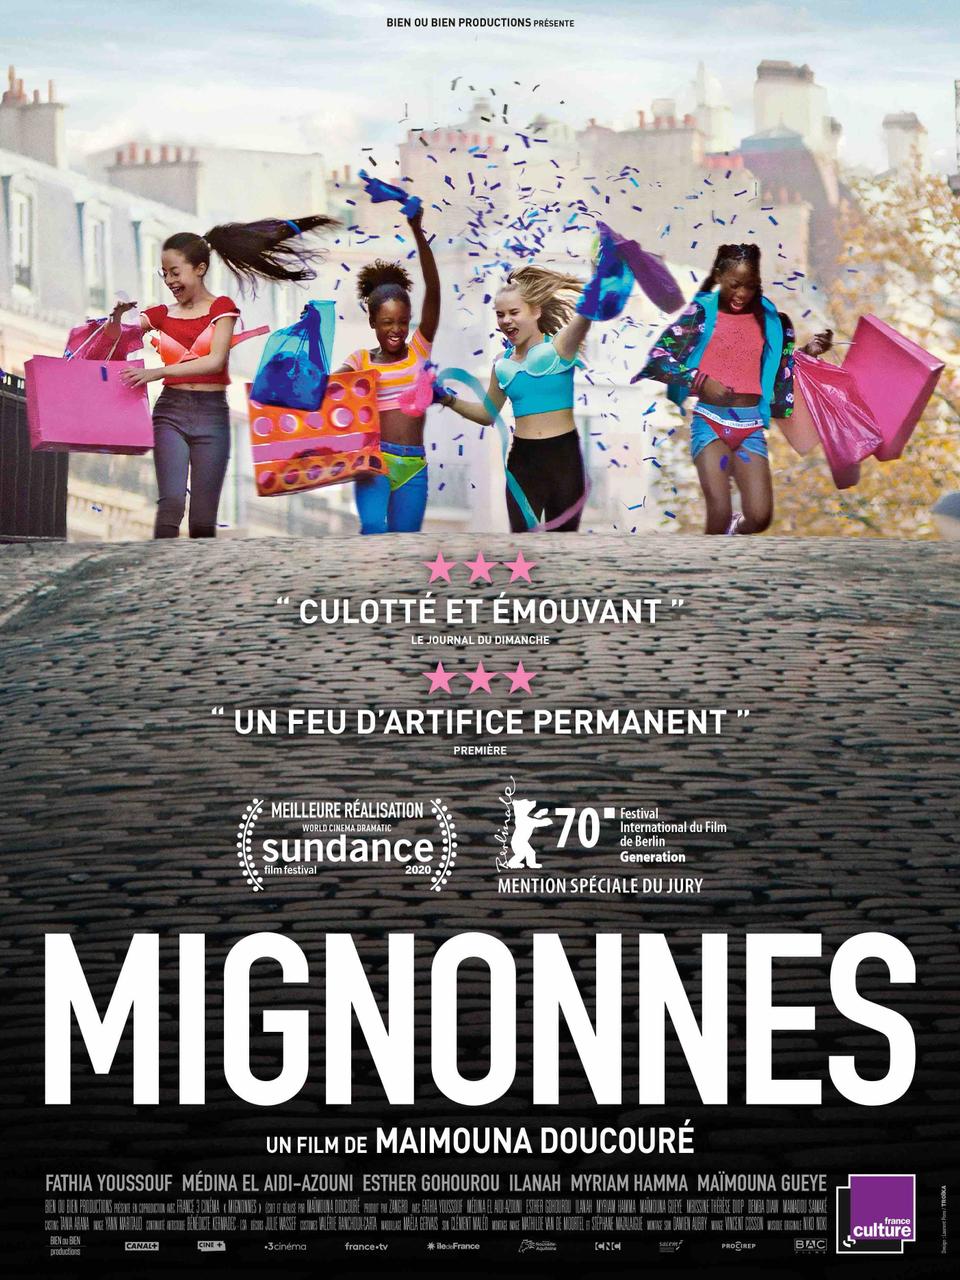 أثار الفيلم الفرنسي Cuties ضجة كبيرة بسبب ما عرضه منمشاهد راقصة ذات إيحاء جنسي لفتيات قاصرات